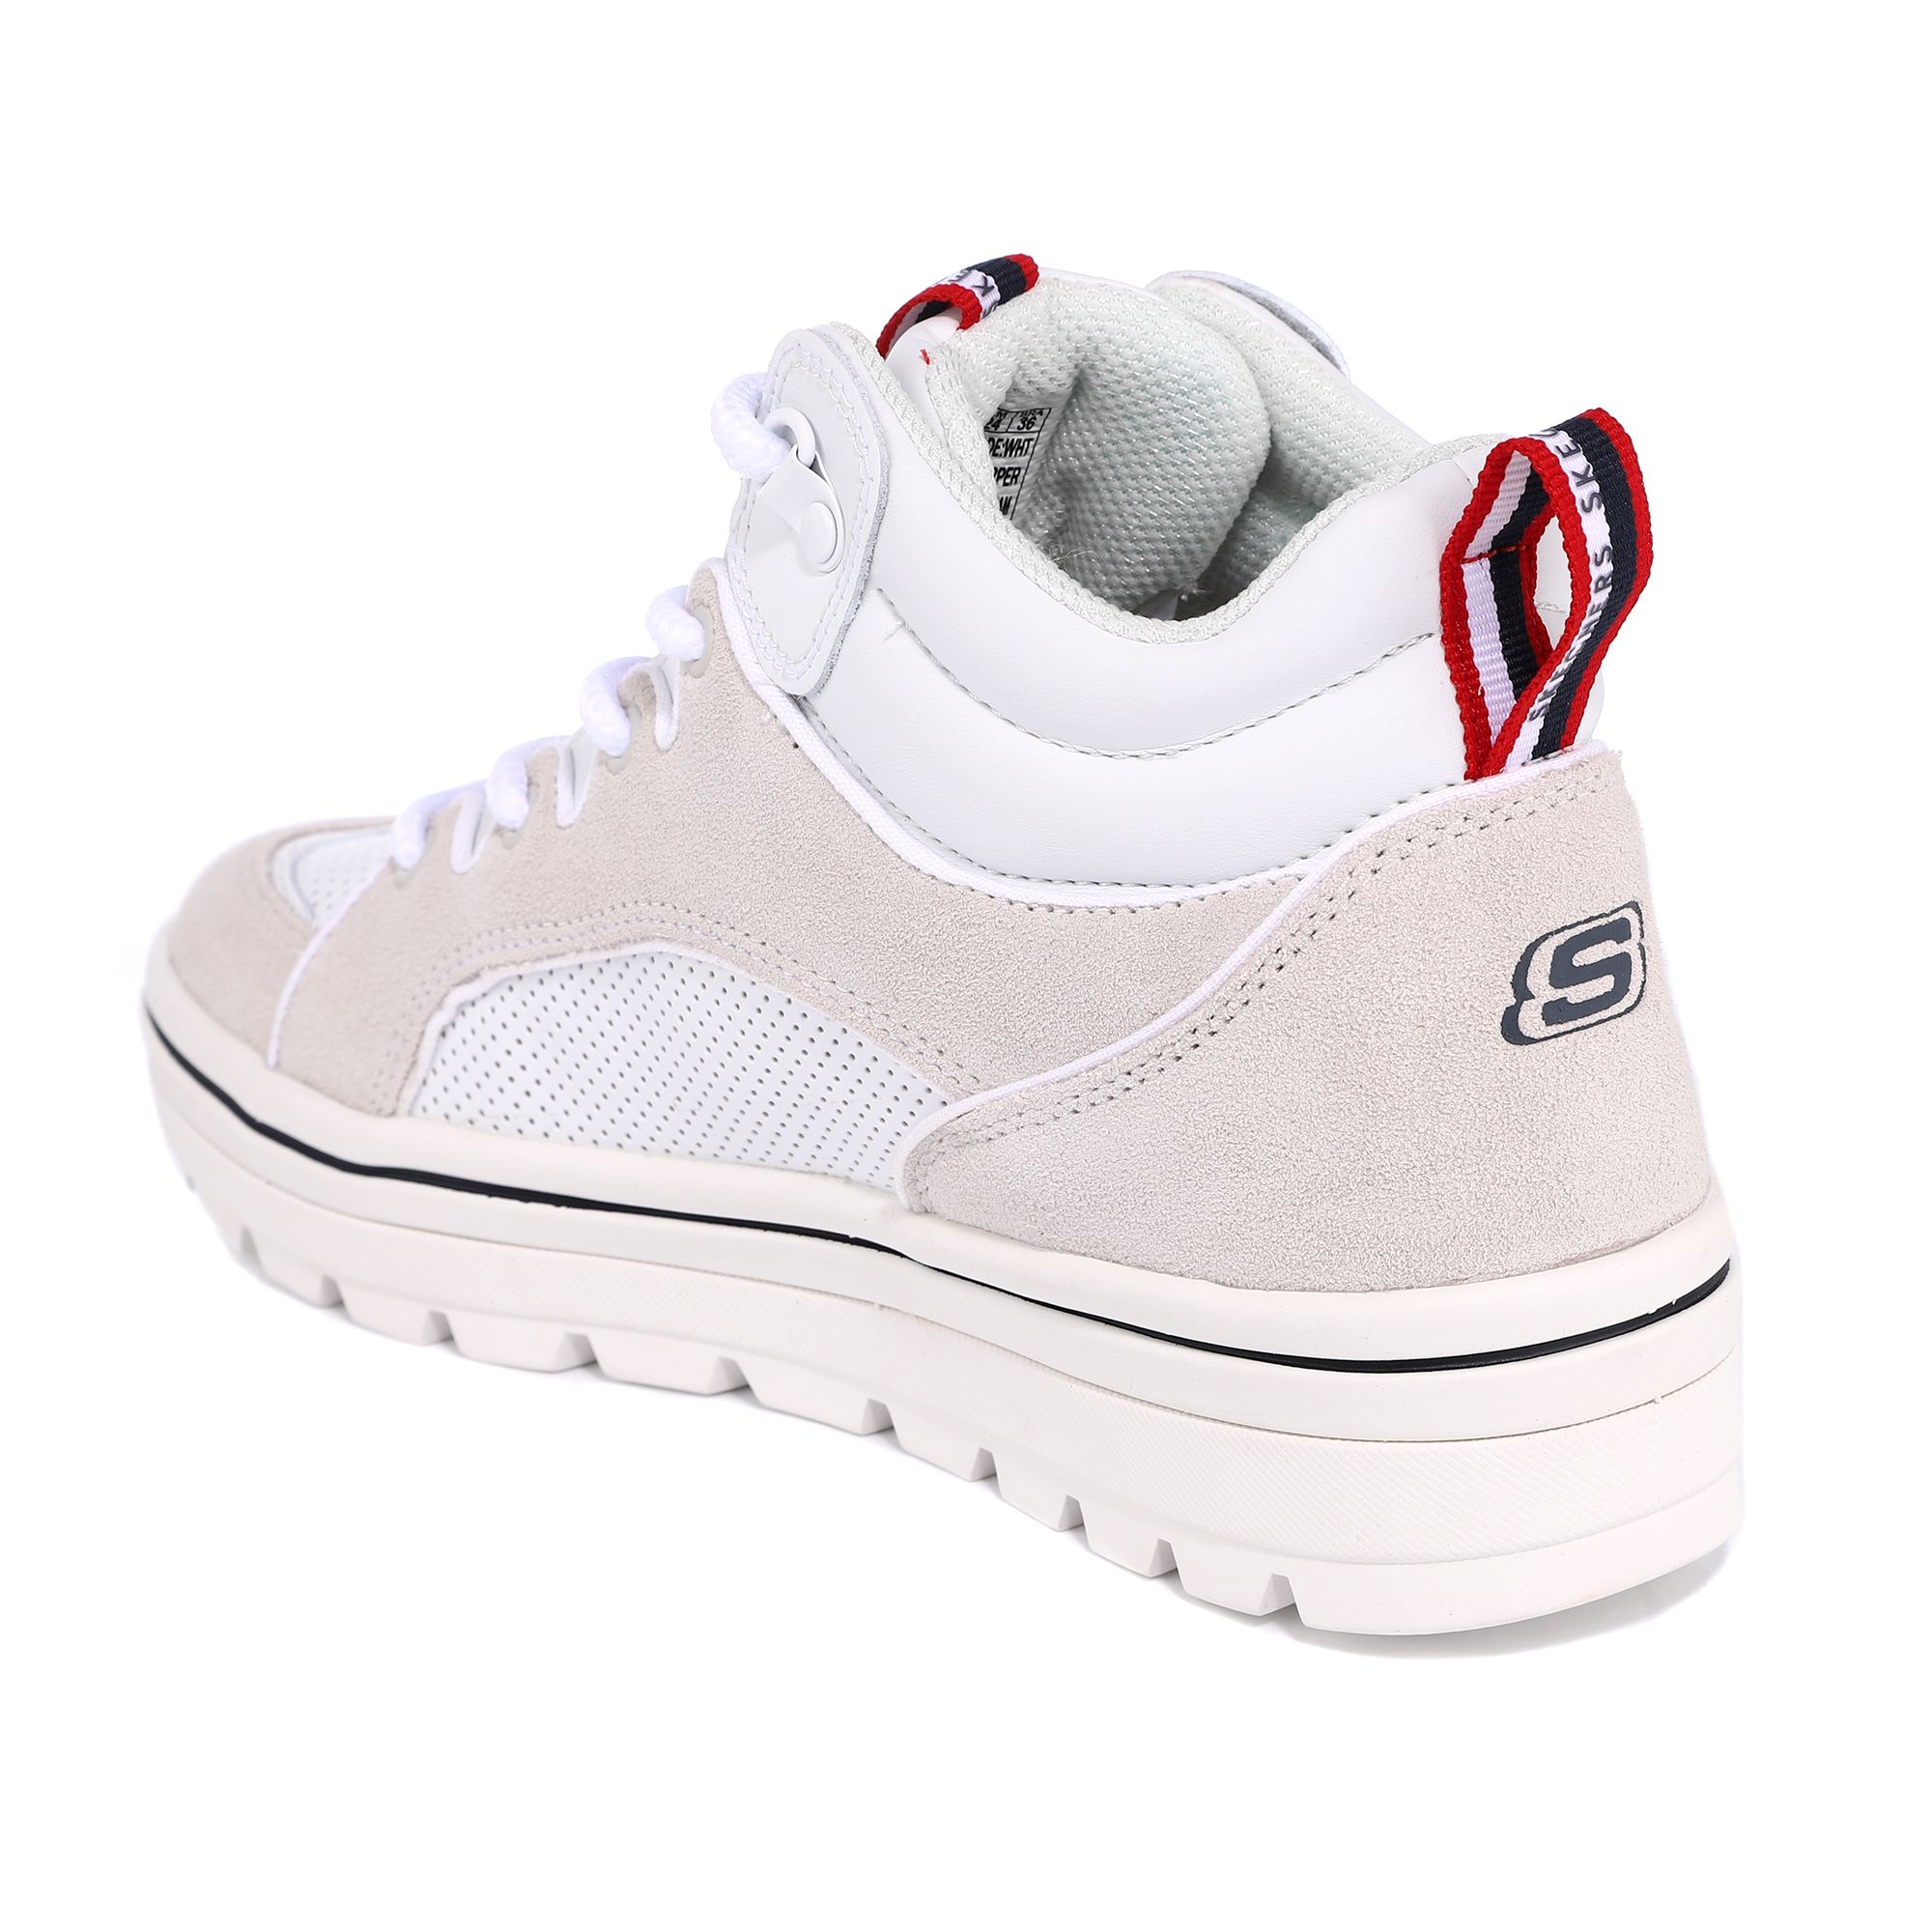 Gr 34 ! Schuhe Sneaker Skaterschuhe evtl auch f\u00fcr Gr 35 Boots Ankleboots Skechers Shoes High Top Sneaker Sneakers Freizeit Turnschuhe Stoff 